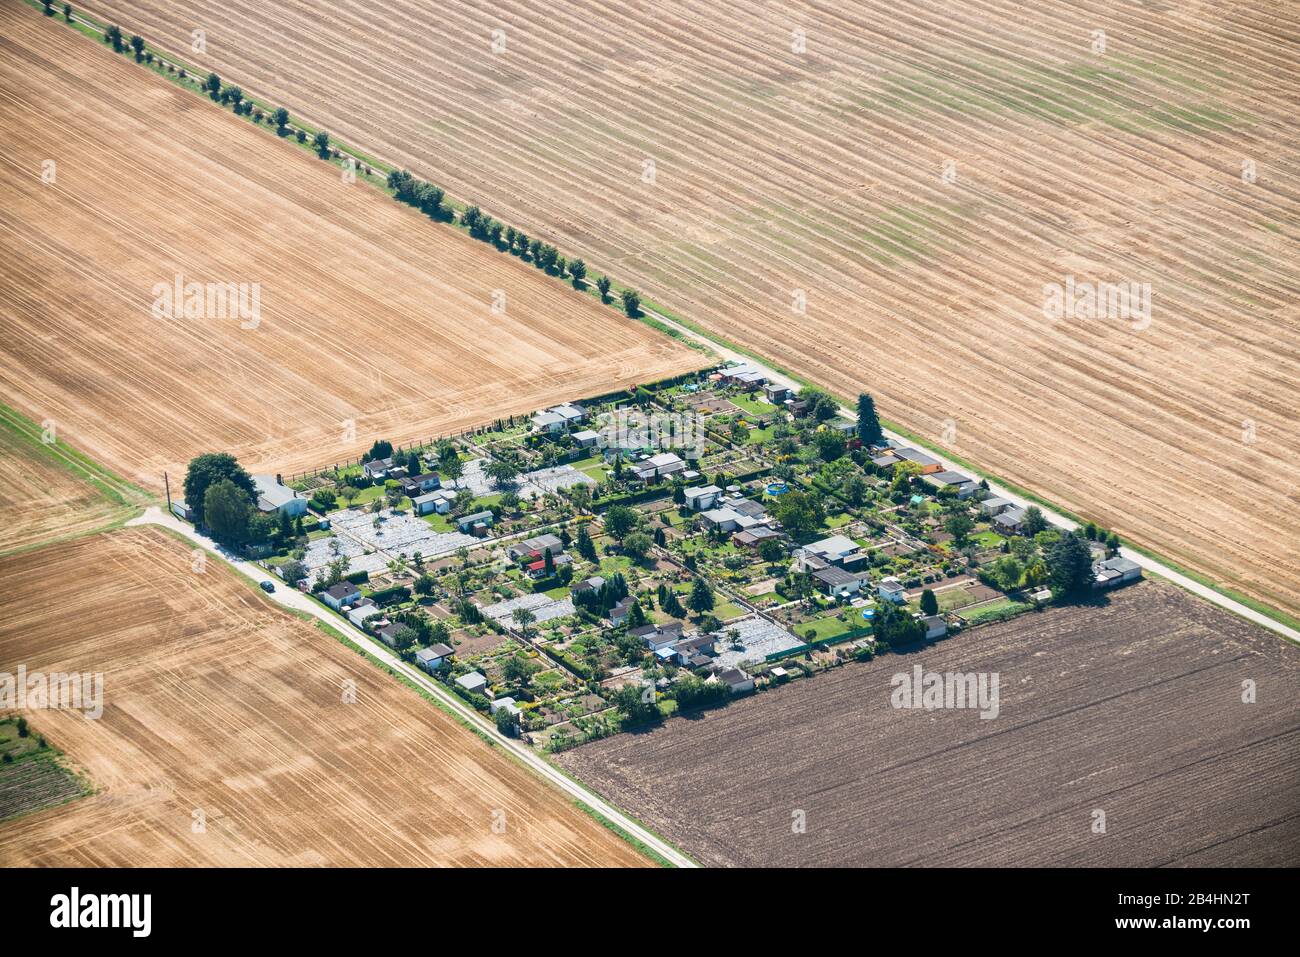 Luftaufnahme von einer Schrebergarten-Anlage umgeben von Landwirtschaftsflächen Stock Photo